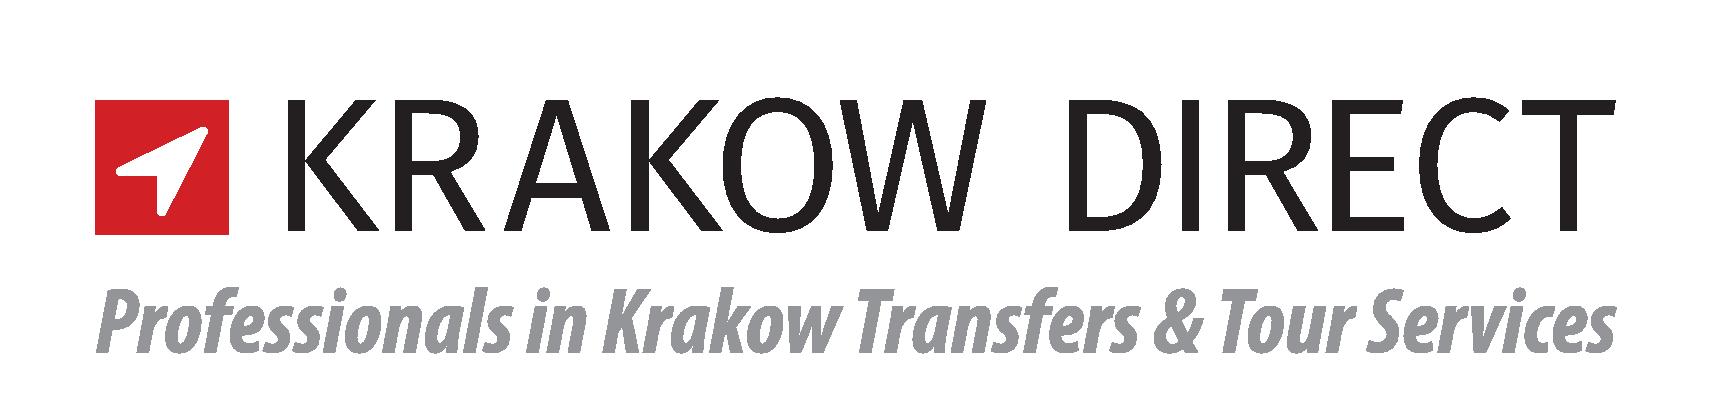 Krakow Direct